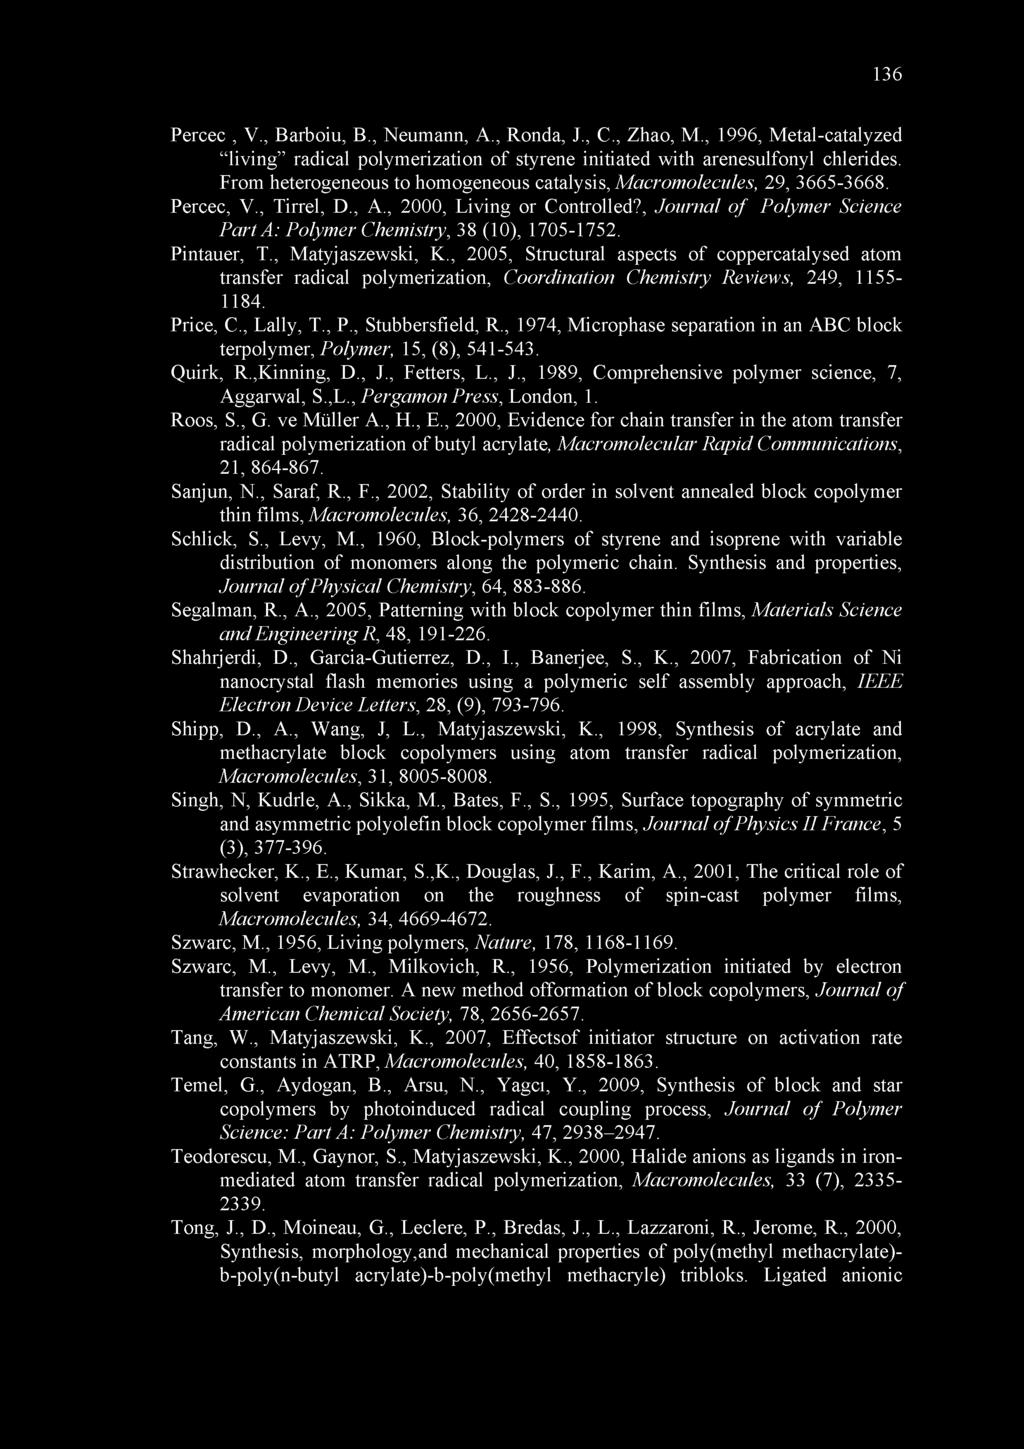 , Journal of Polymer Science Part A: Polymer Chemistry, 38 (10), 1705-1752. Pintauer, T., Matyjaszewski, K.